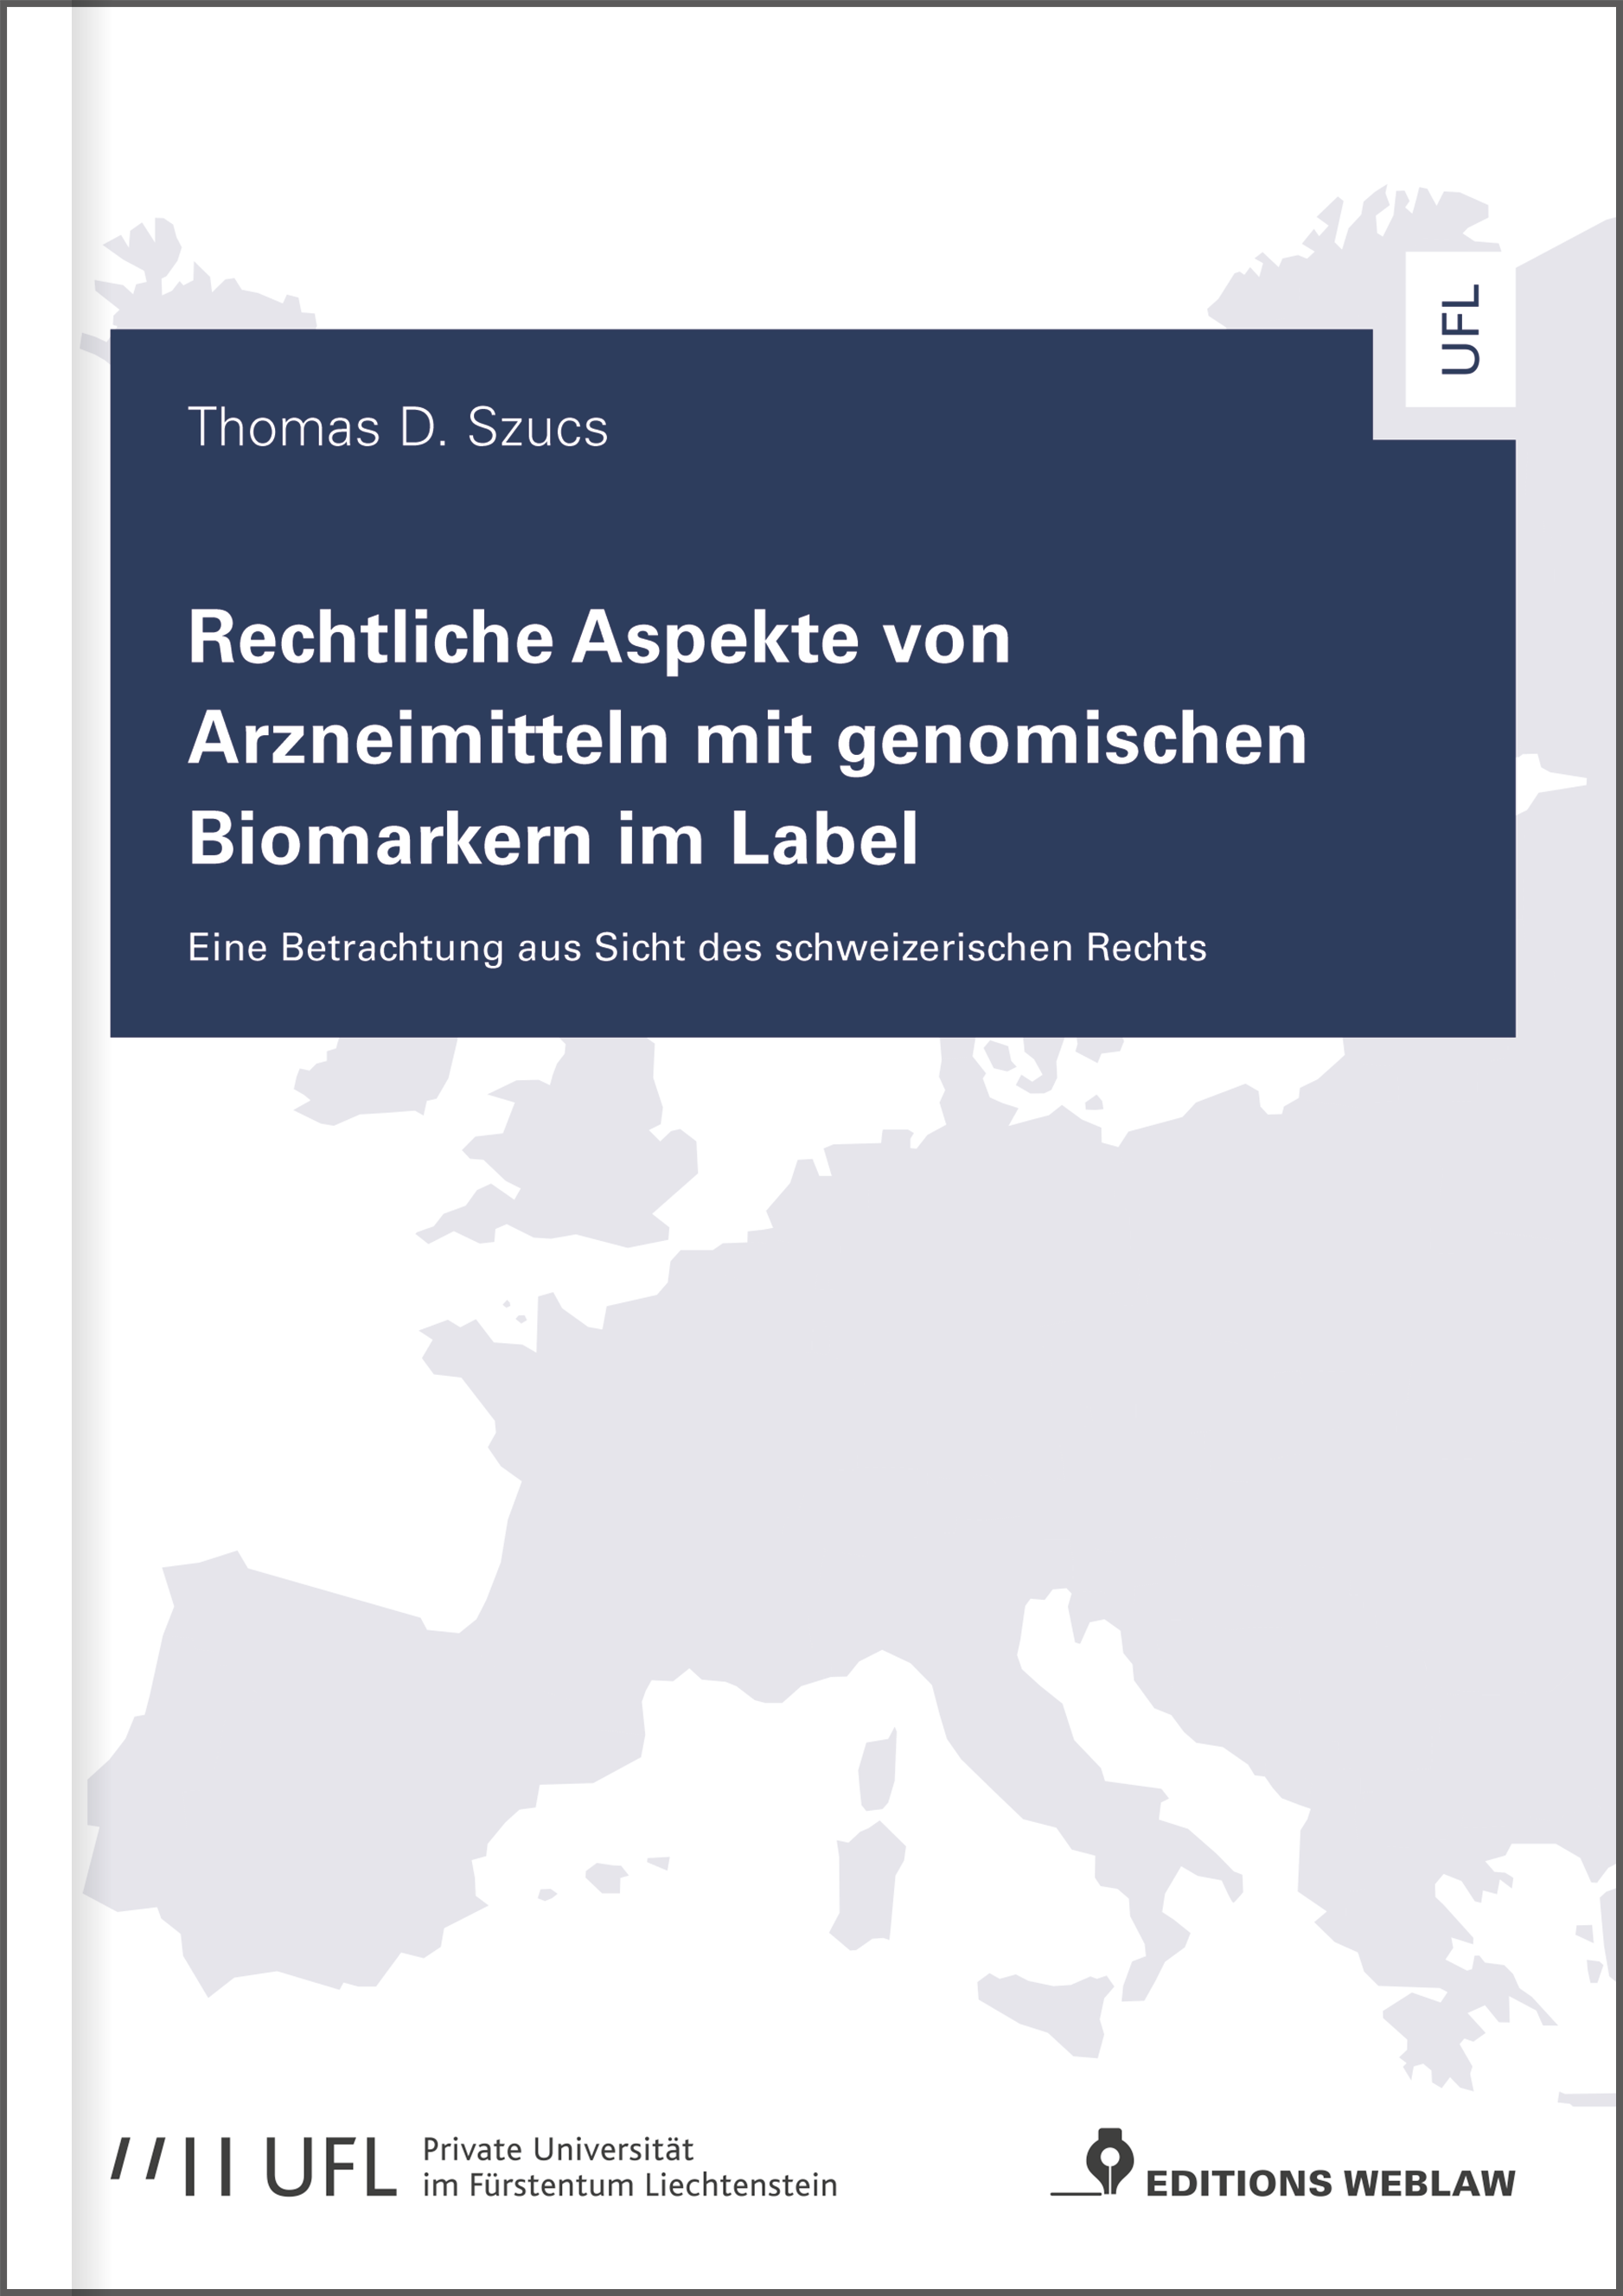 Thomas D. Szucs, Rechtliche Aspekte von Arzneimitteln mit genomischen Biomarkern im Label: neu bei Editions Weblaw